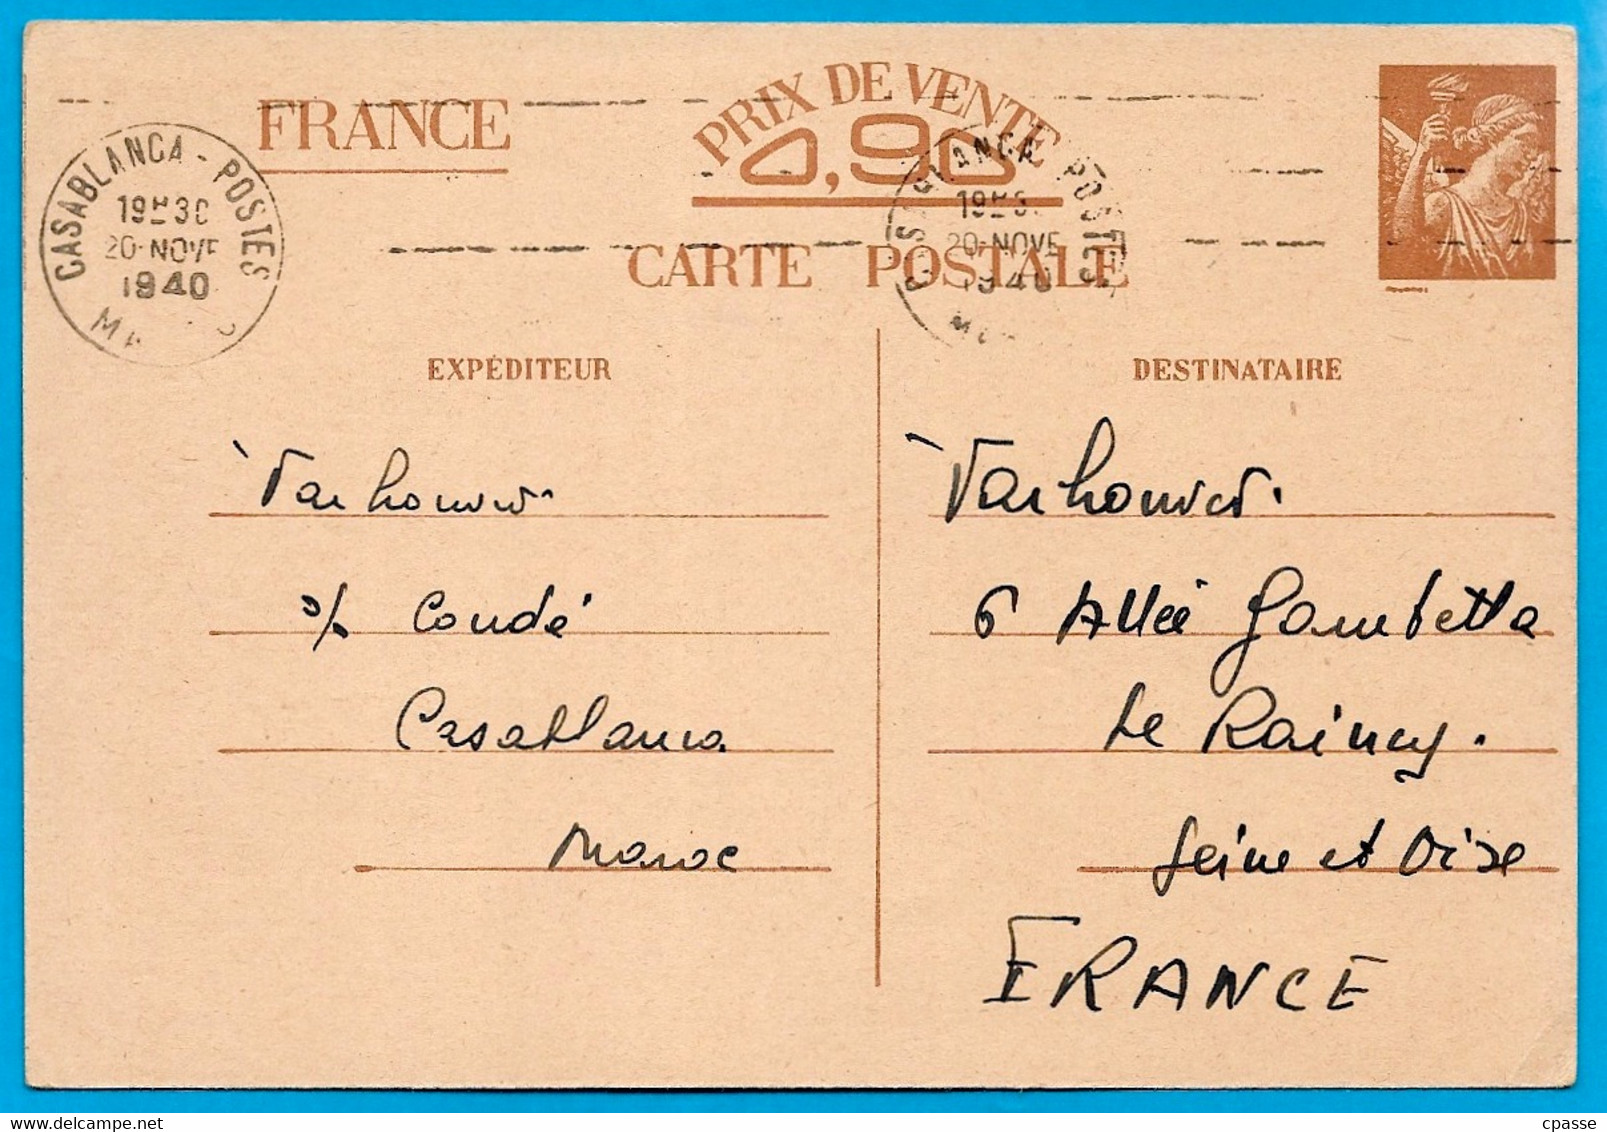 1940 (MAROC) Entier Postal France (Sans Valeur CP1 Brun) Posté CASABLANCA à Destination De La France (Le Raincy) Flamme - Lettres & Documents